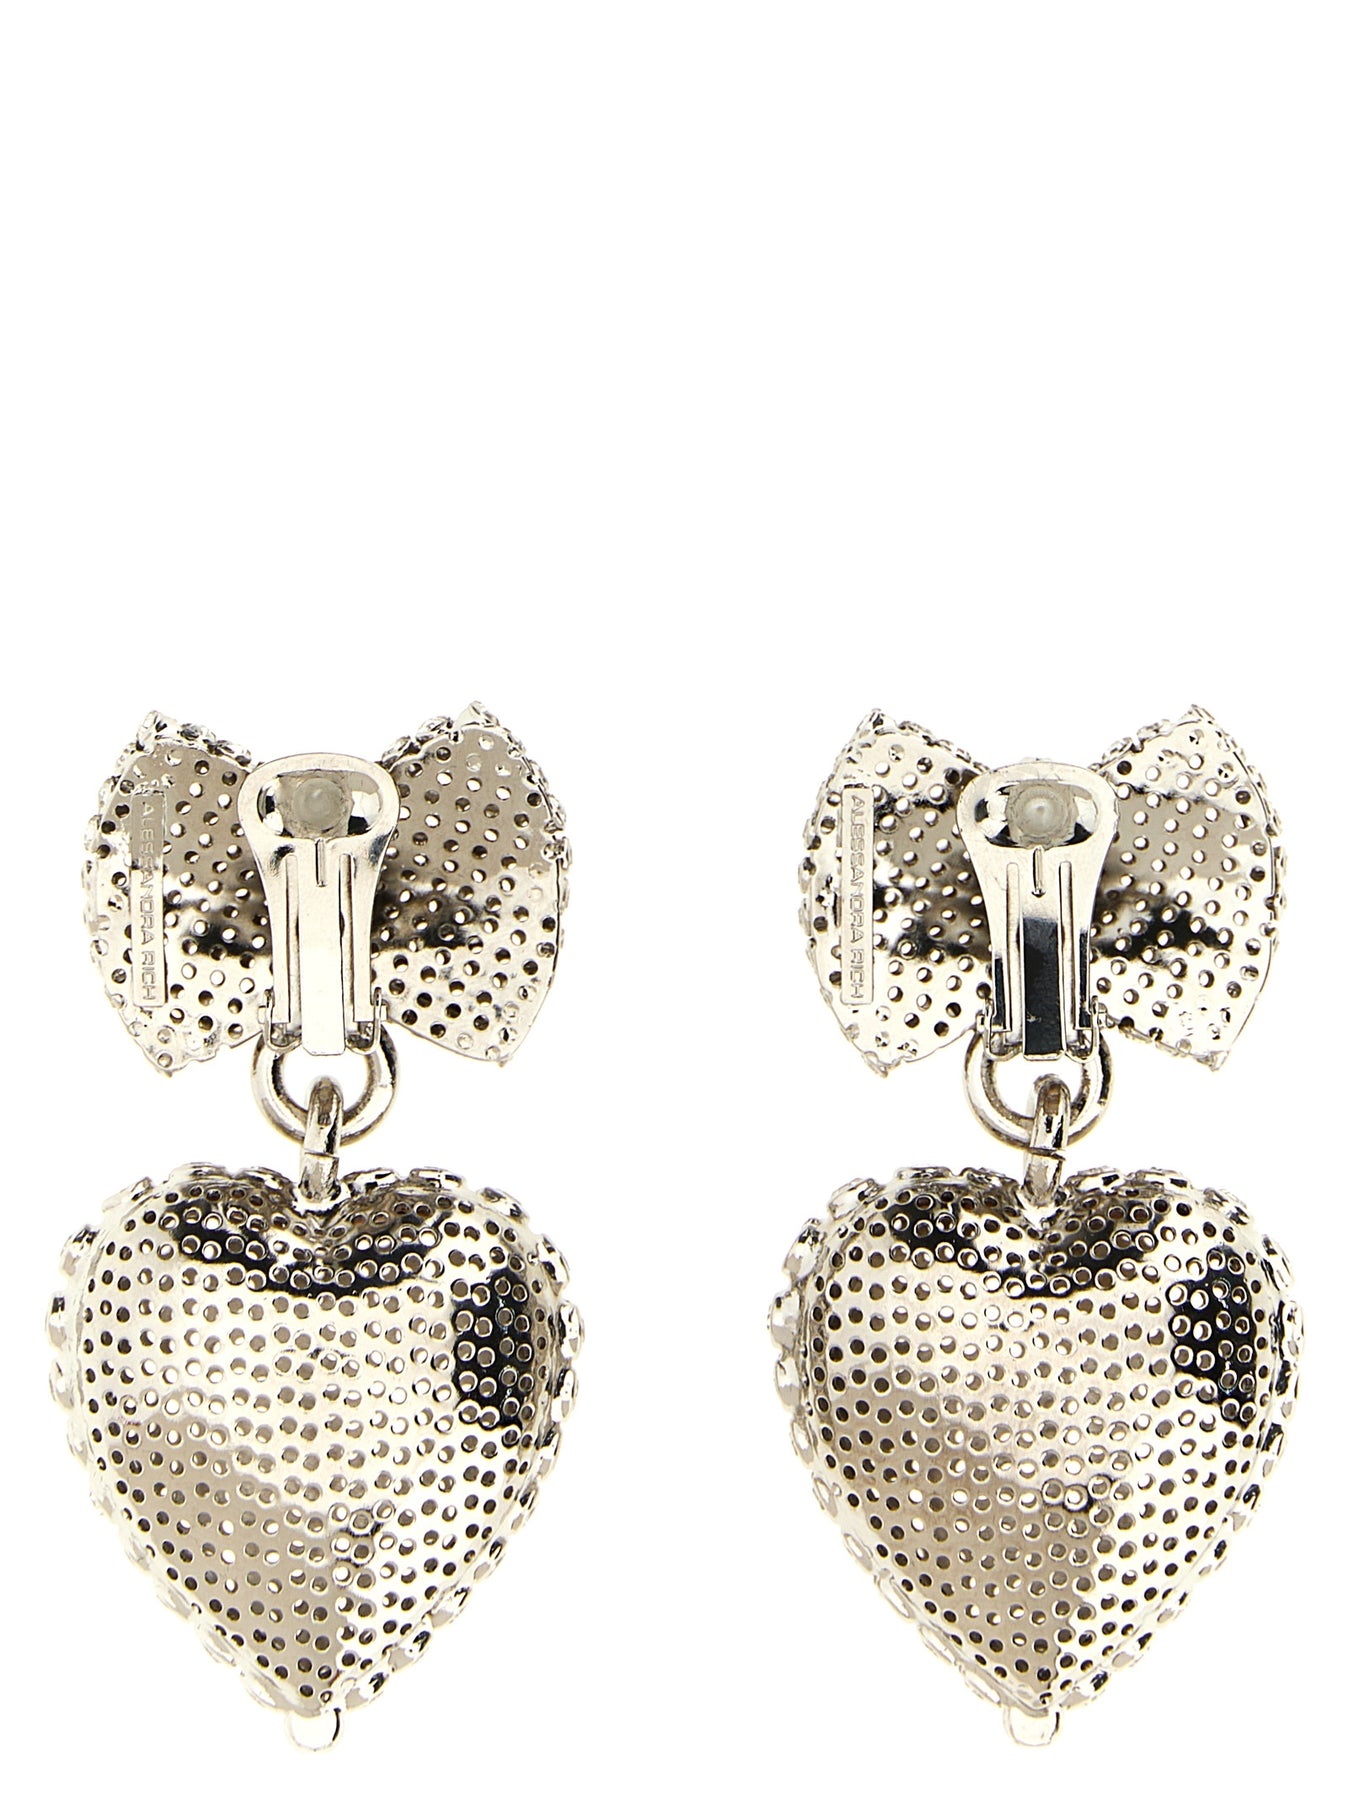 Metal Heart Jewelry Silver - 2